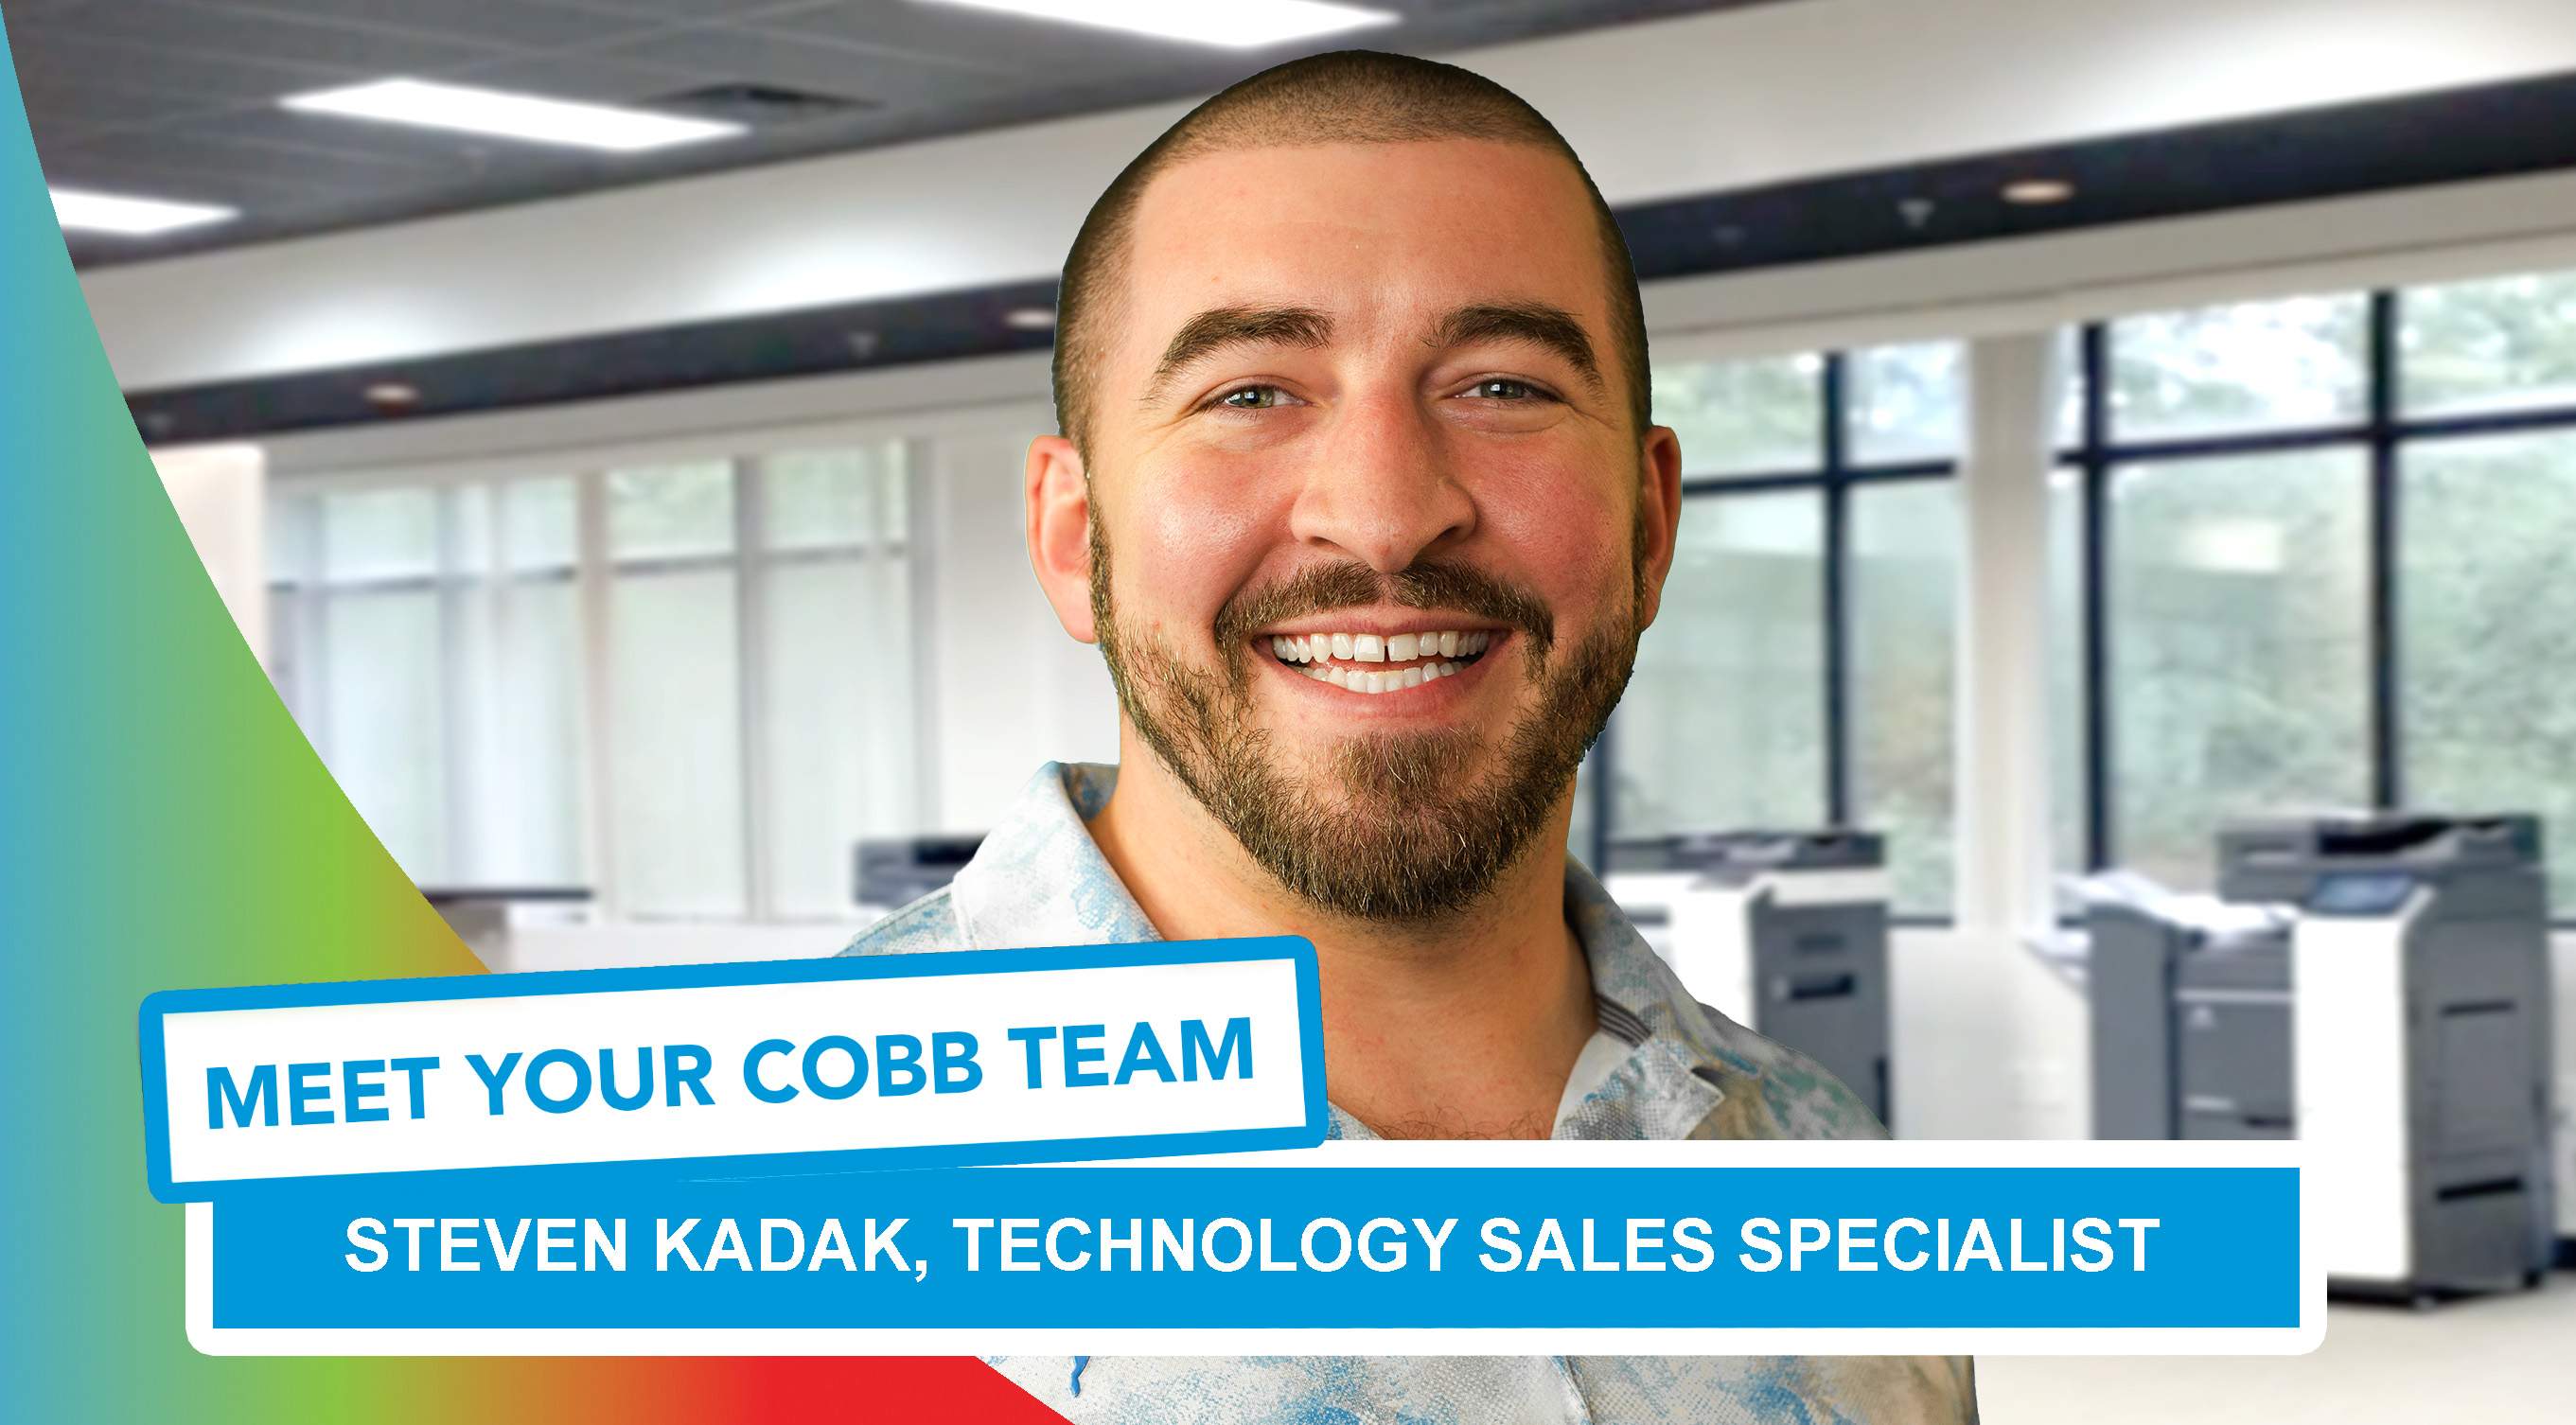 Meet Your Cobb Team: Steven Kadak, Technology Sales Specialist